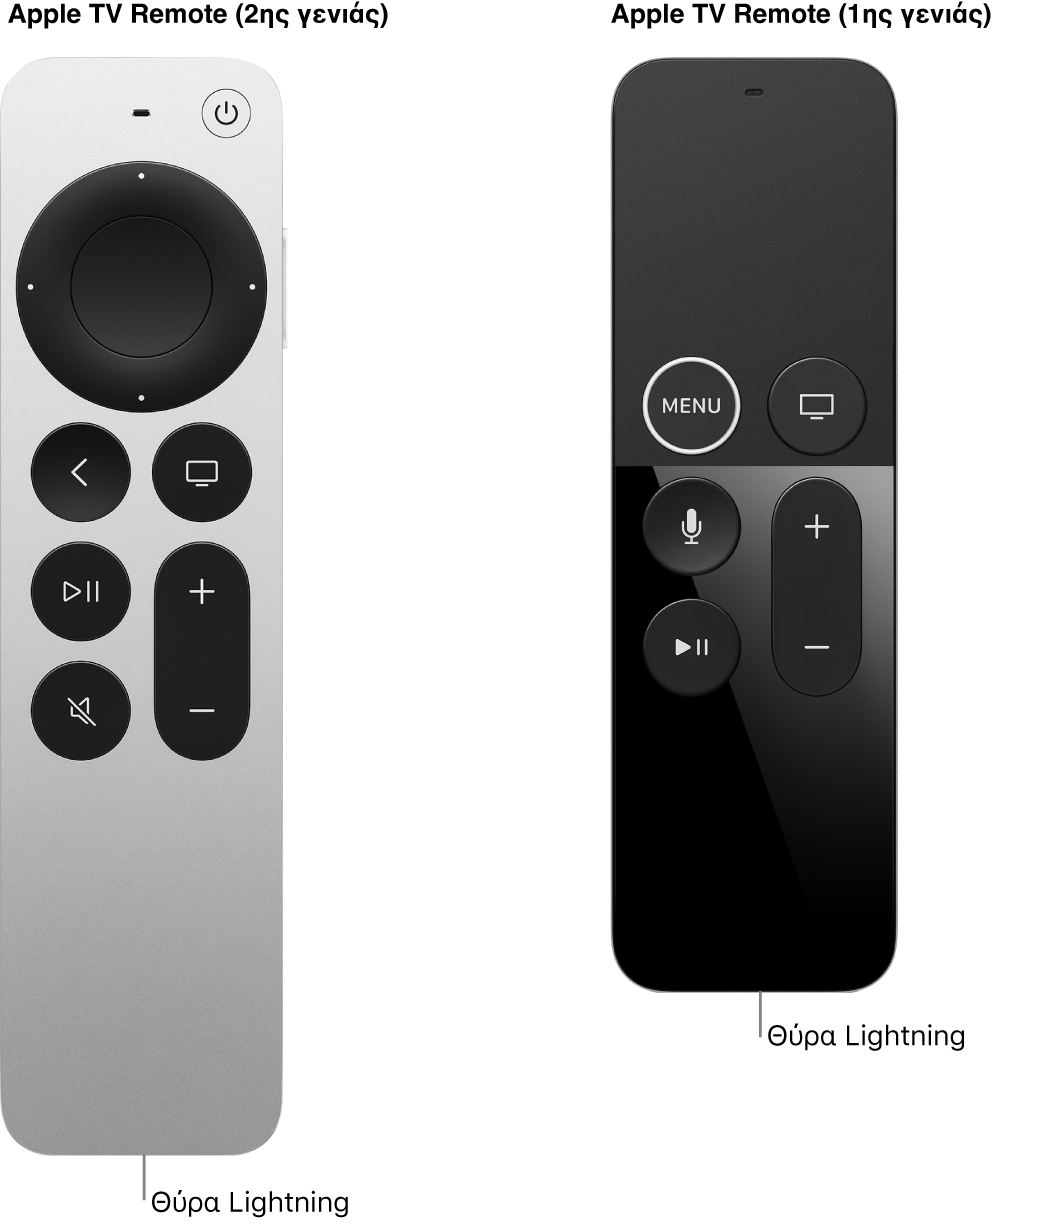 Εικόνα του Apple TV Remote (2ης γενιάς) και του Apple TV Remote (1ης γενιάς) όπου φαίνεται η υποδοχή Lightning